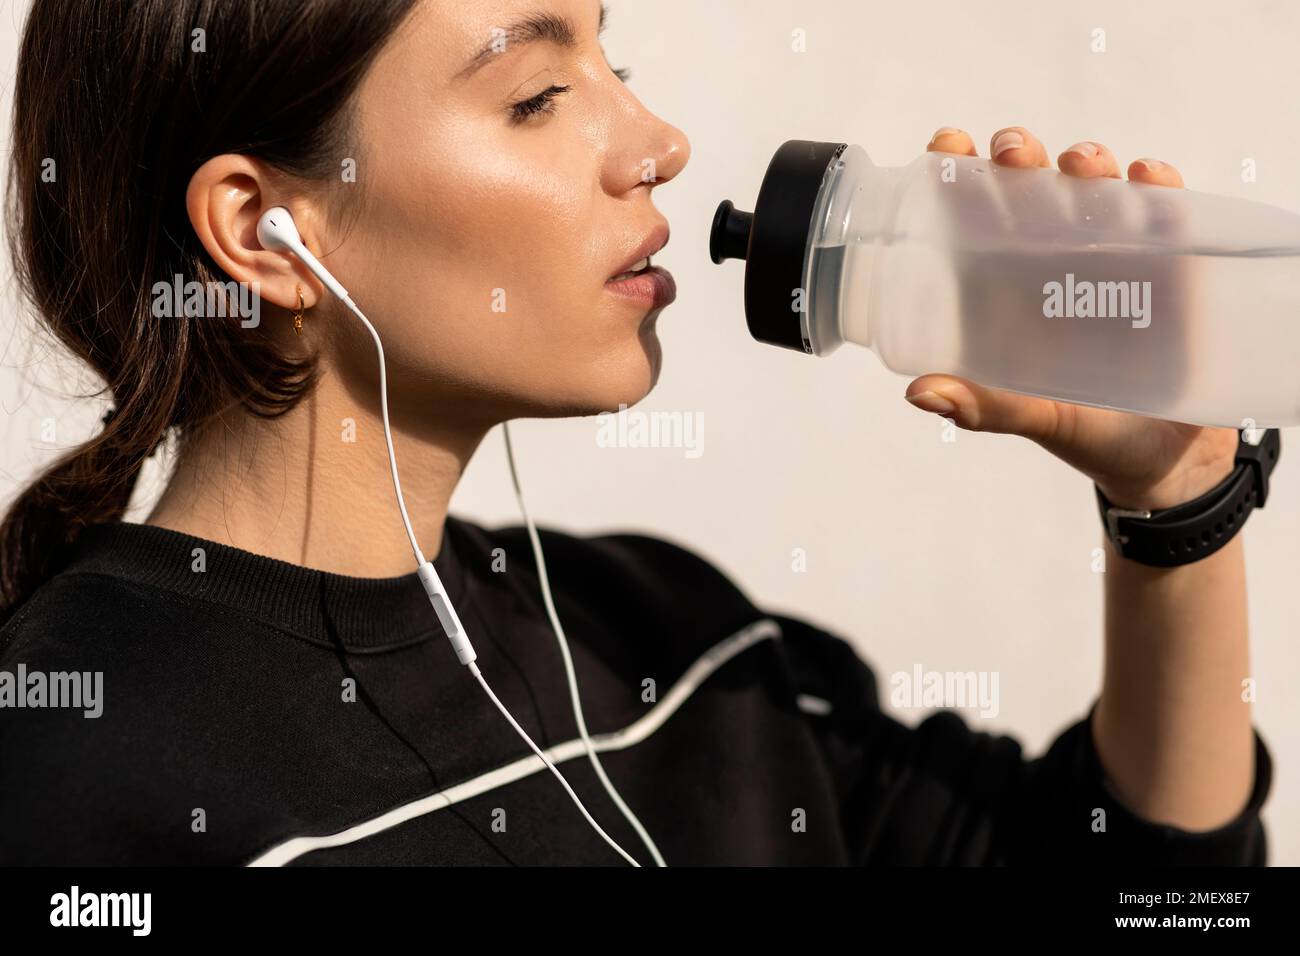 Eine ernsthafte junge sportlerin in sportbekleidung und Kopfhörern, die Wasser aus der Flasche trinkt, entspannt Stockfoto